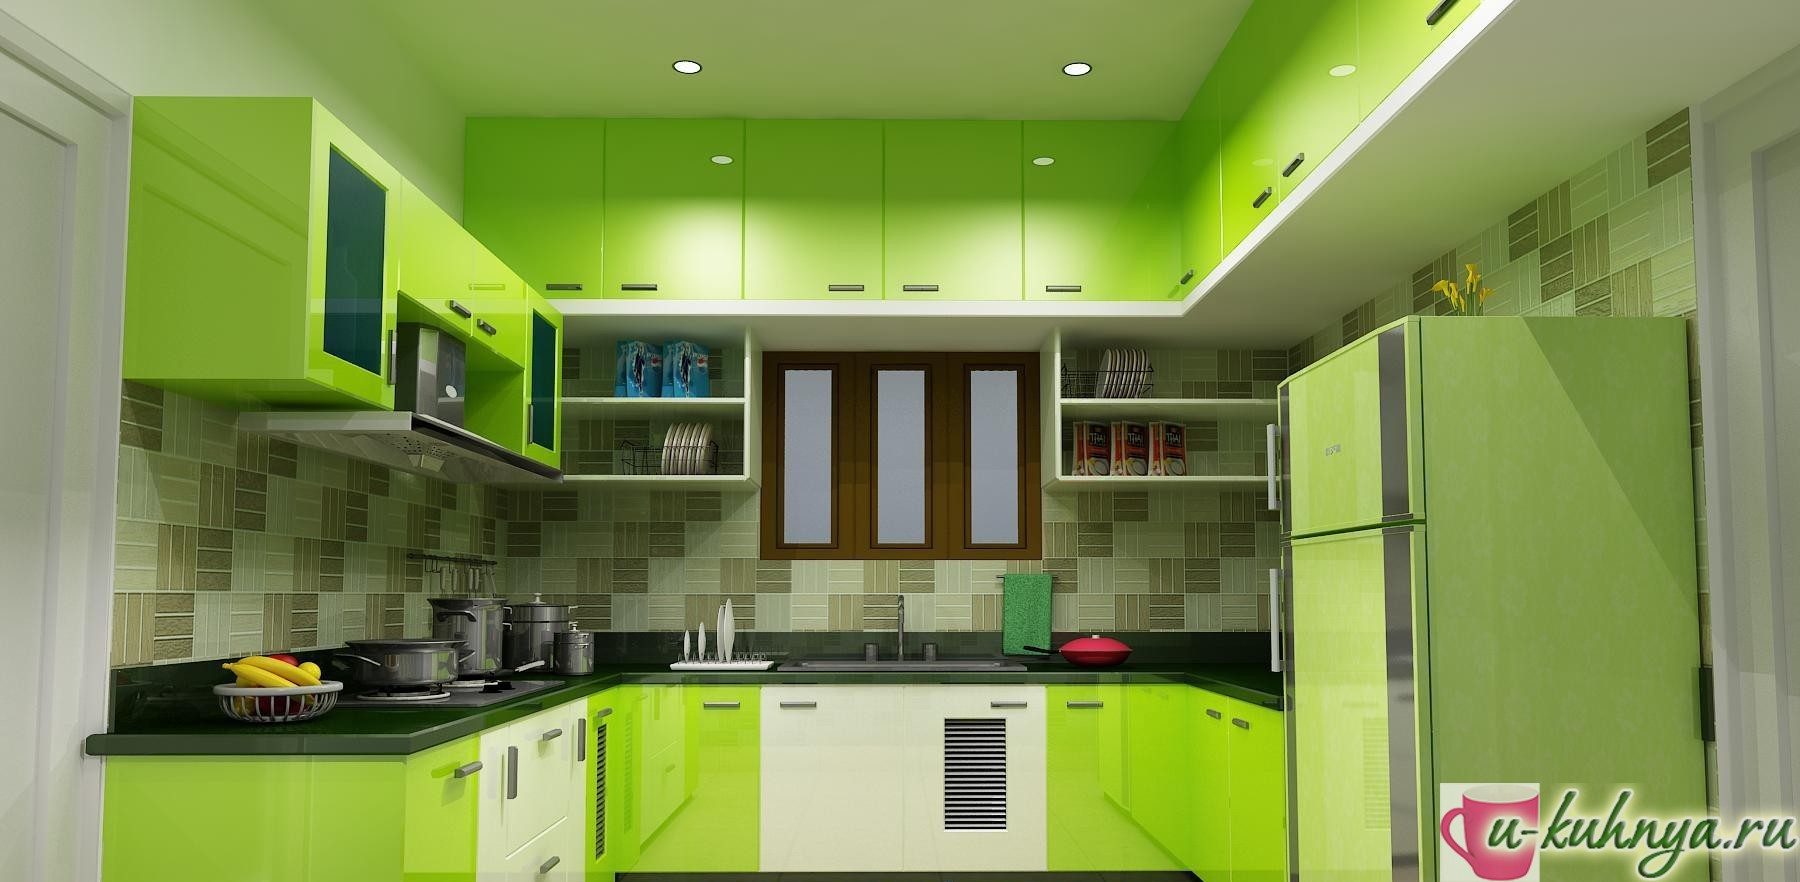 зеленая кухня в интерьере фото